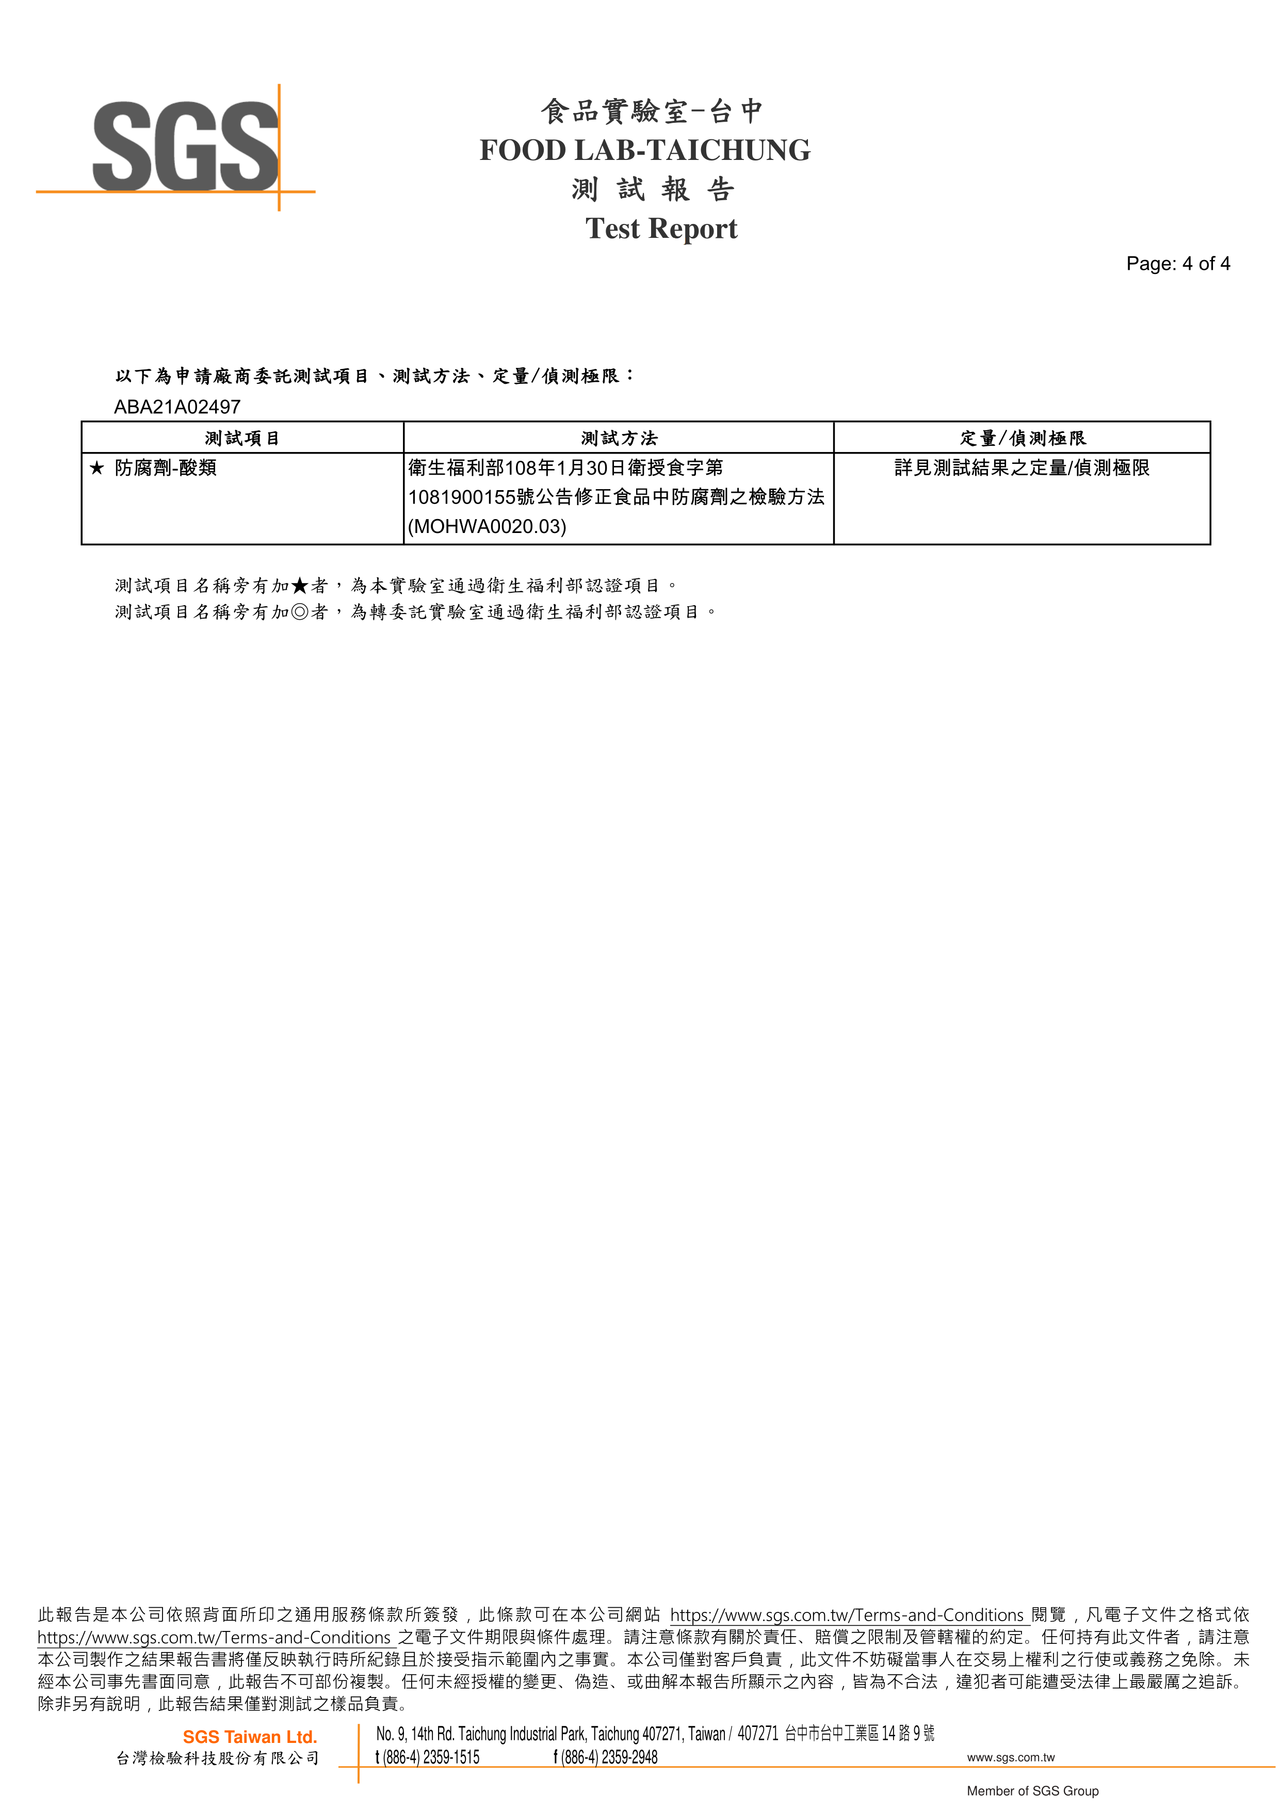 東北酸菜鍋-防腐劑檢驗報告2021.10.28